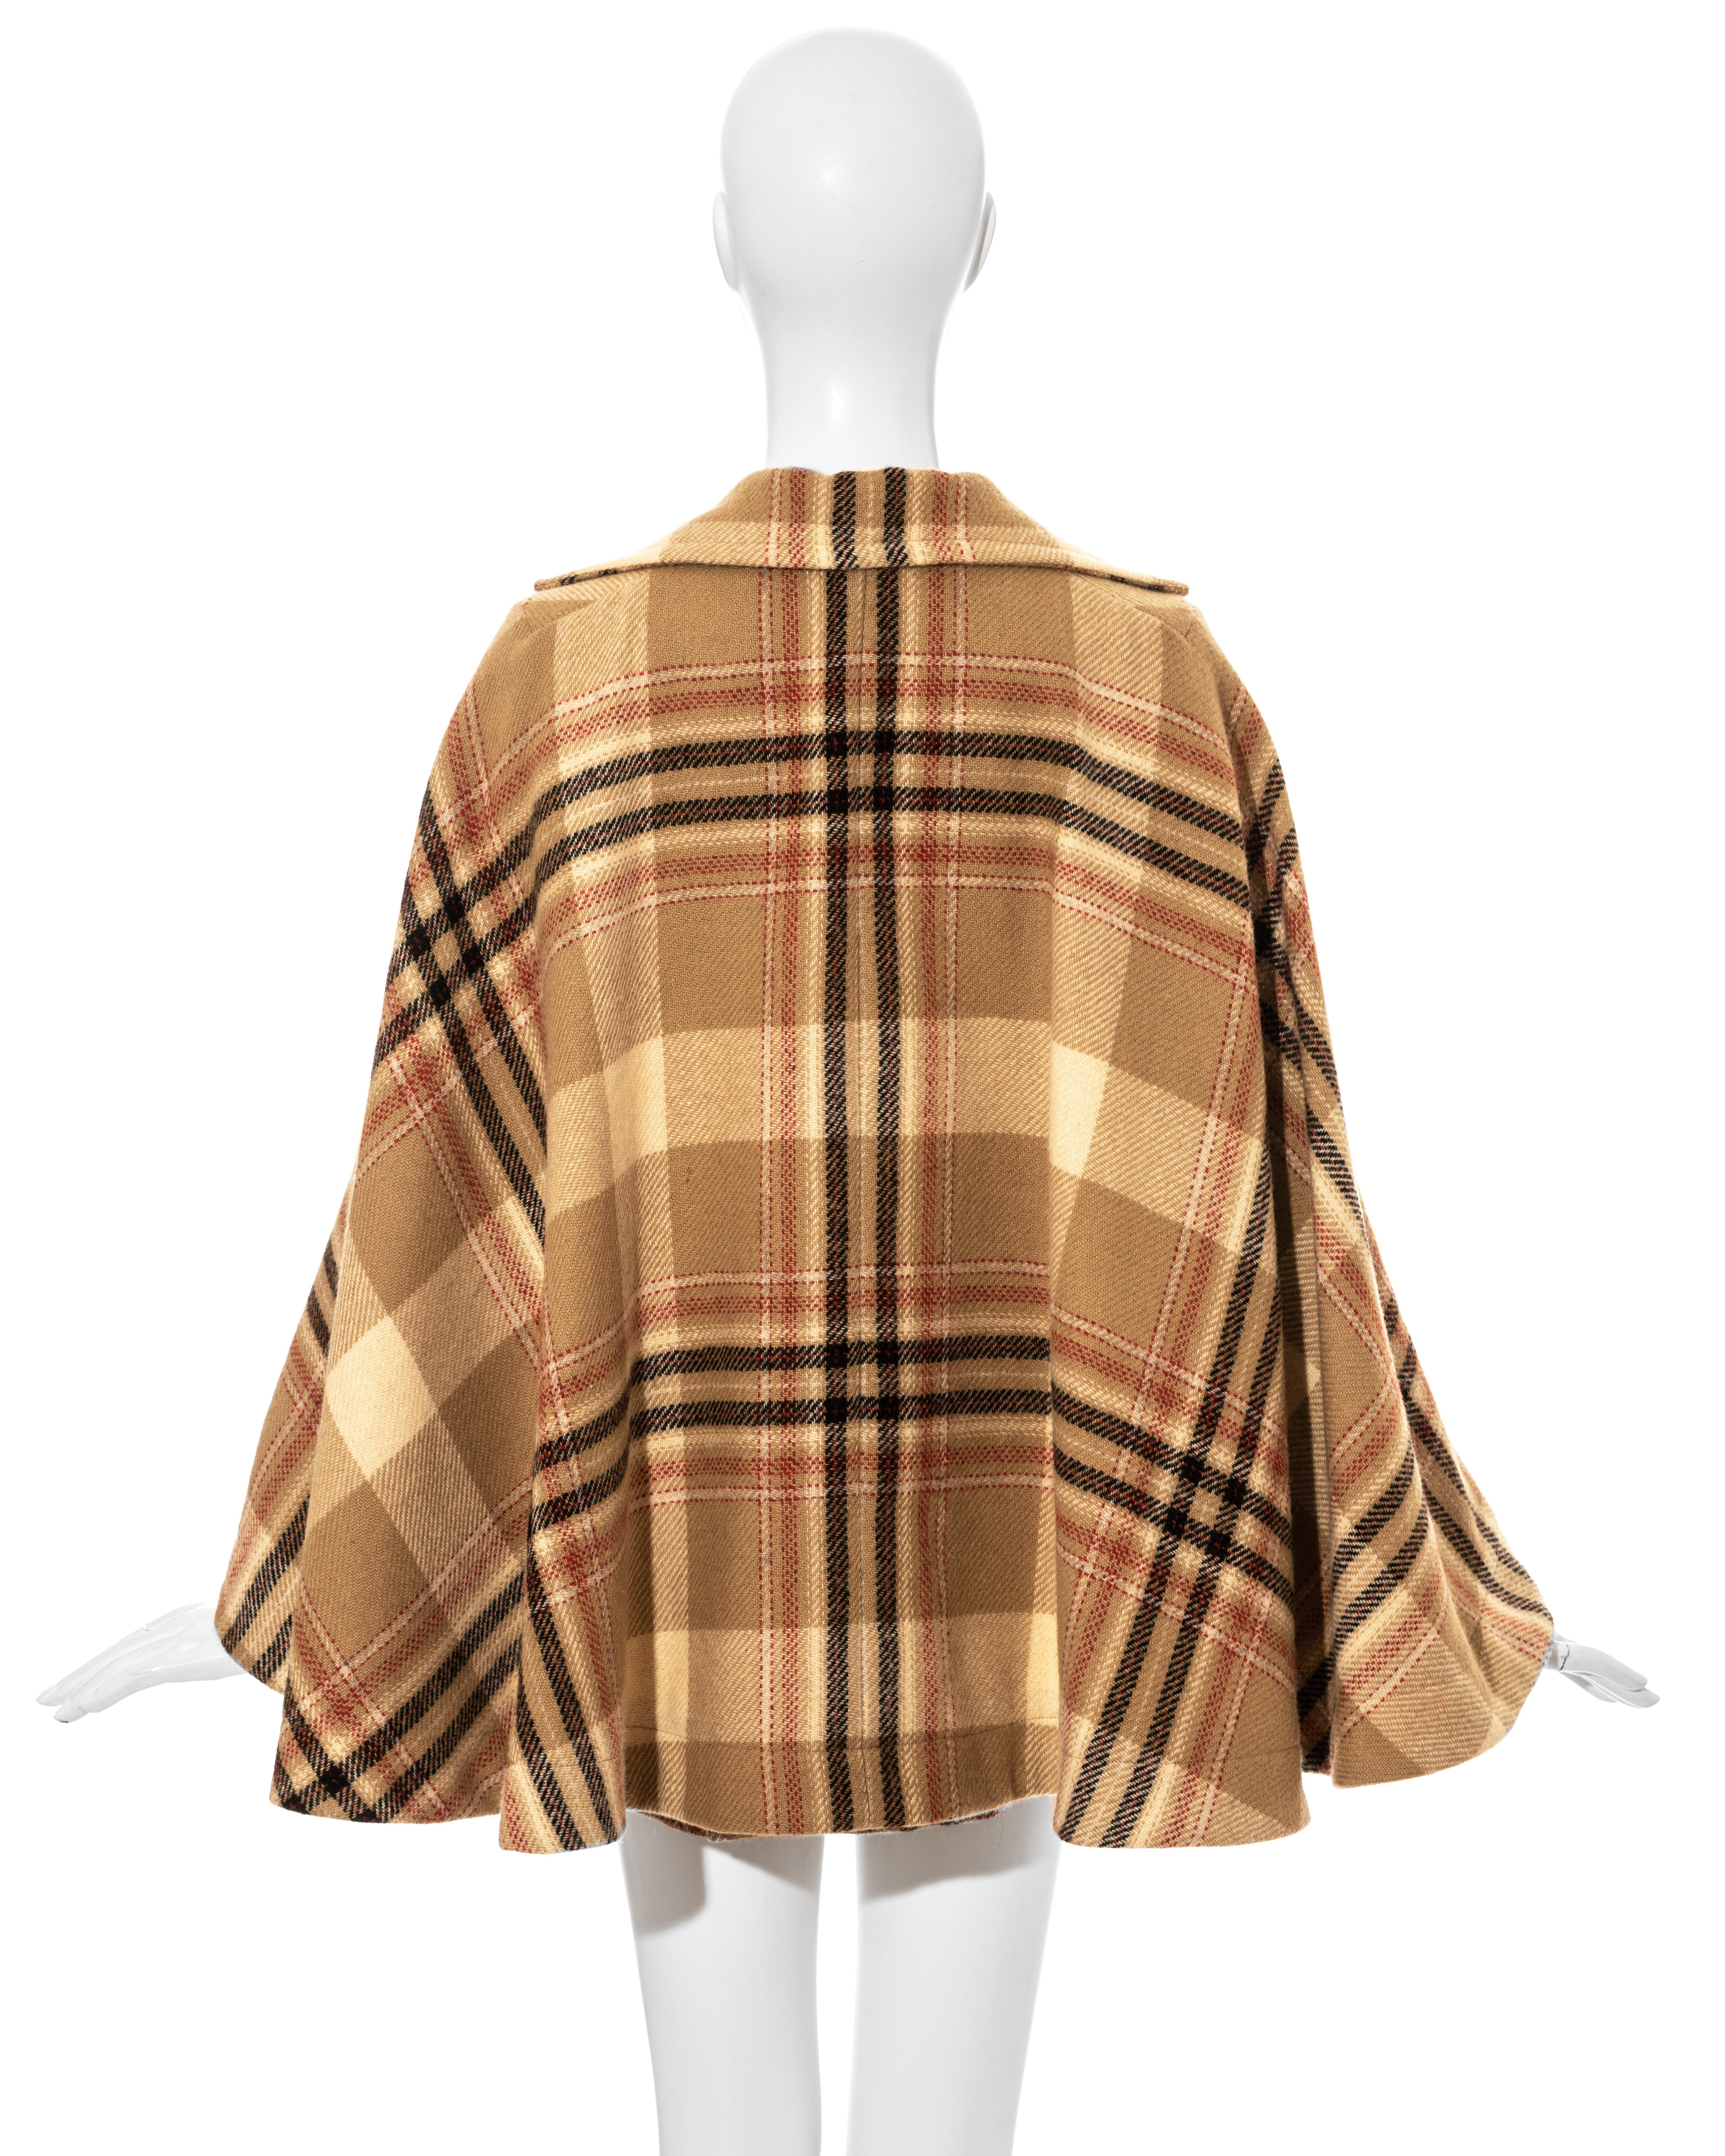 Brown Vivienne Westwood cream tartan tweed skirt suit, fw 1994  For Sale